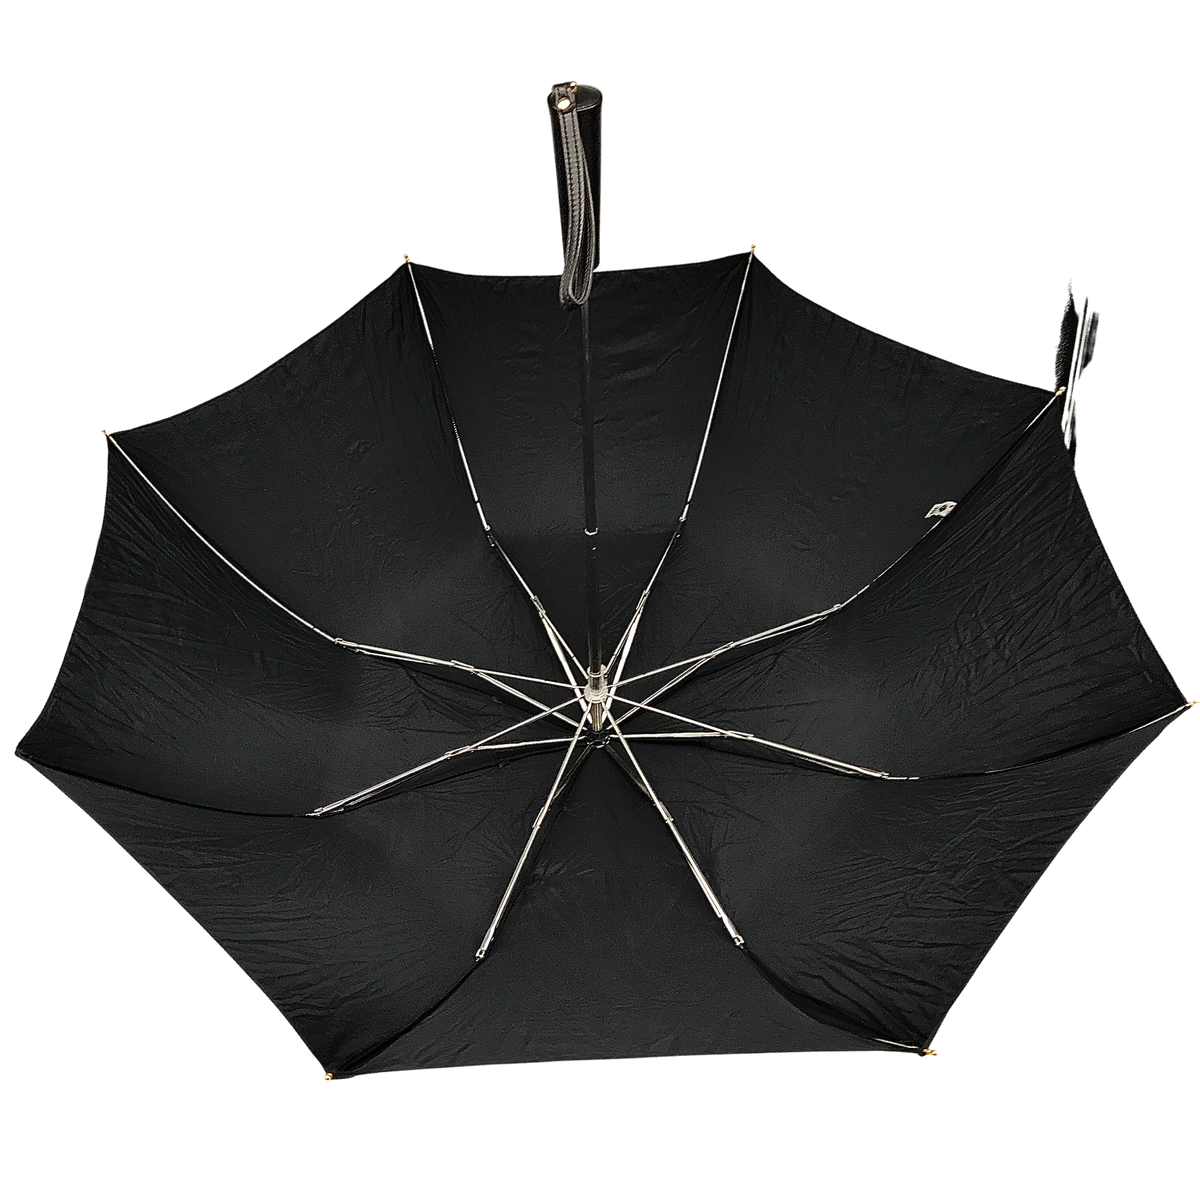 Get the best deals on Acetate Vintage Umbrellas & Parasols when